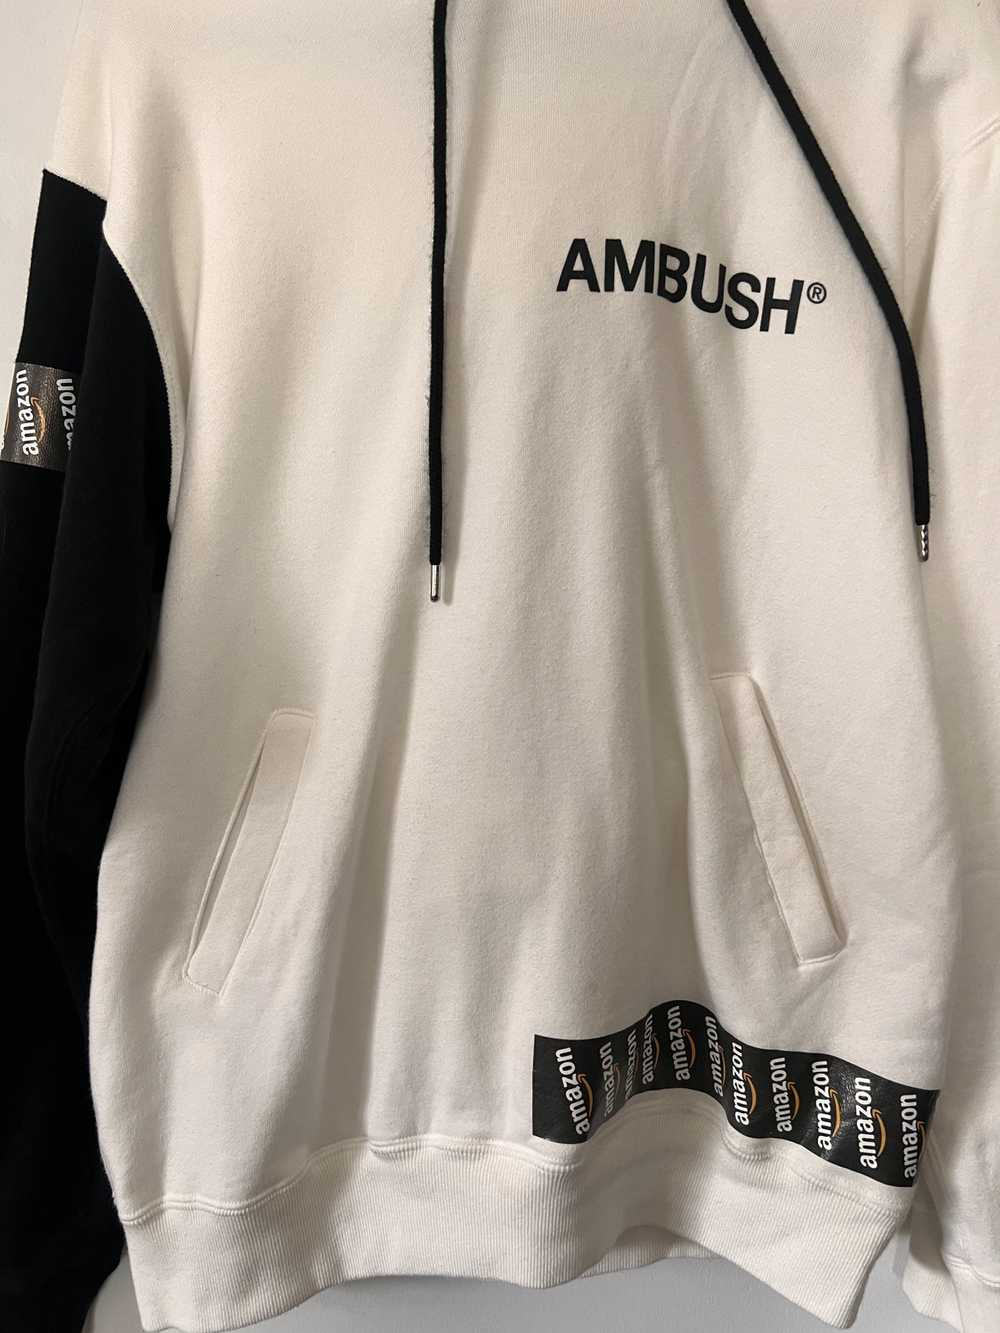 Amazon × Ambush Design AMAZON × AMBUSH TAPED DESI… - image 3